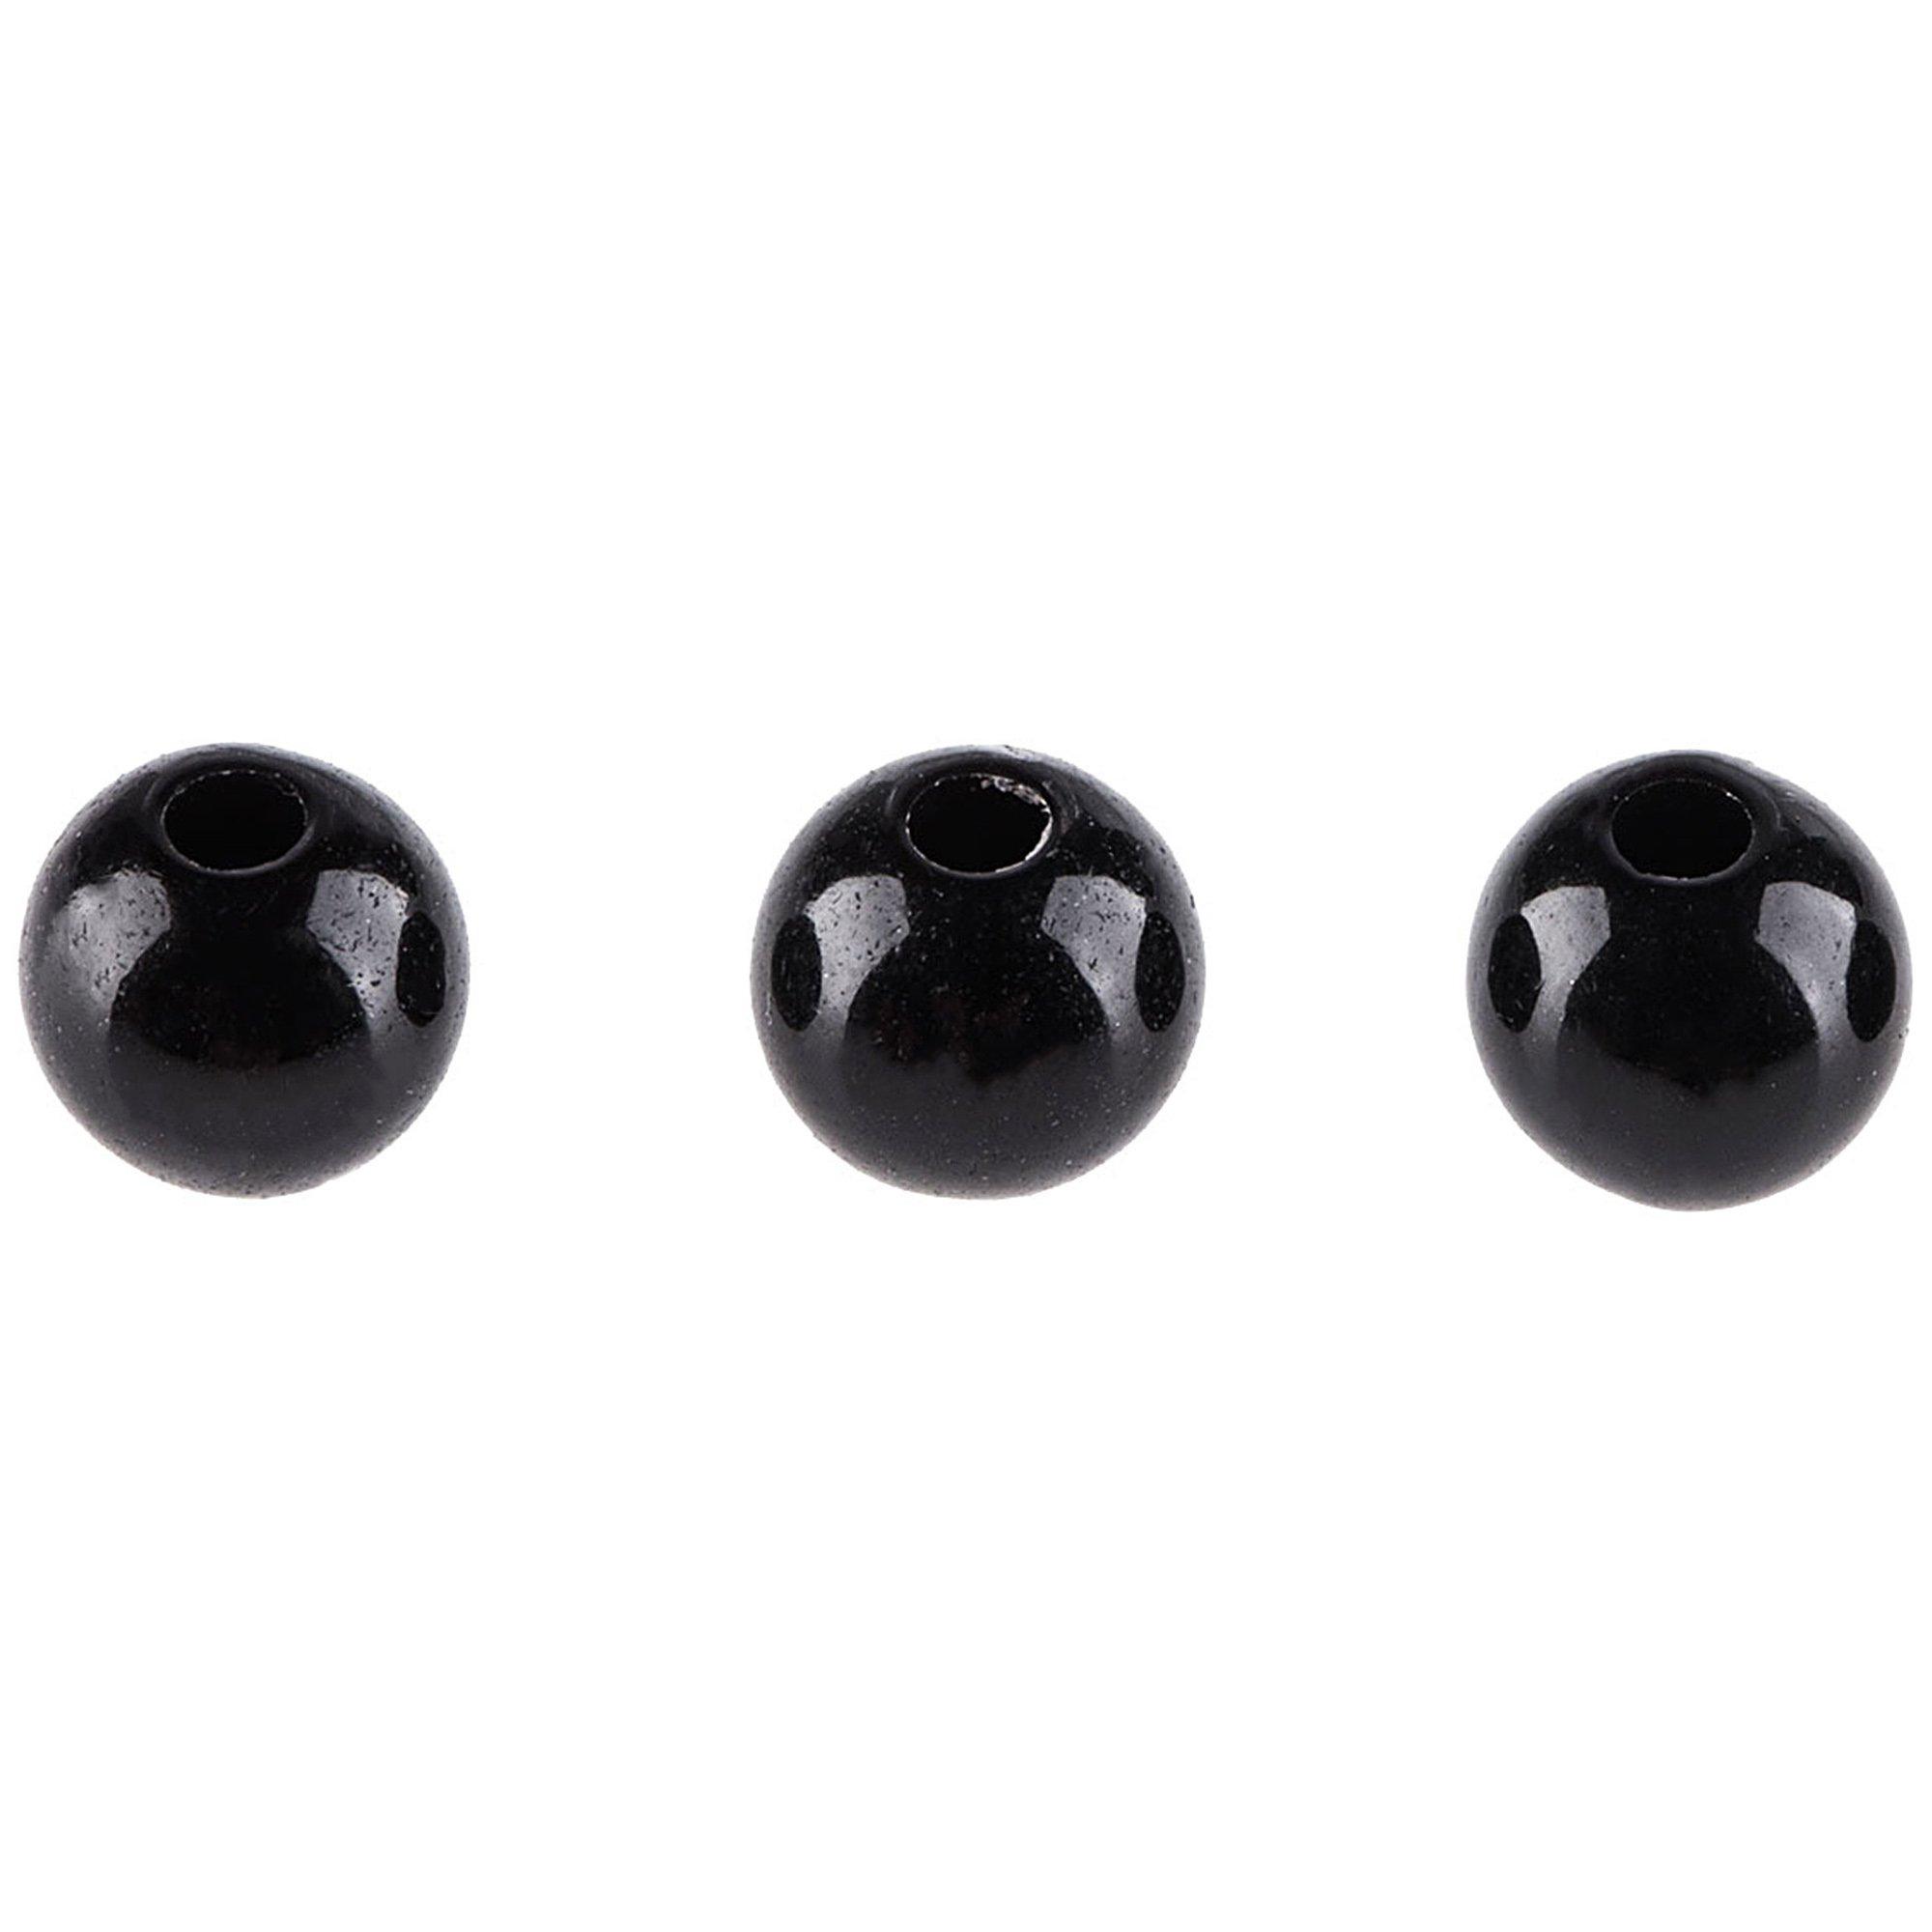 Black Round Beads - 6mm, Hobby Lobby